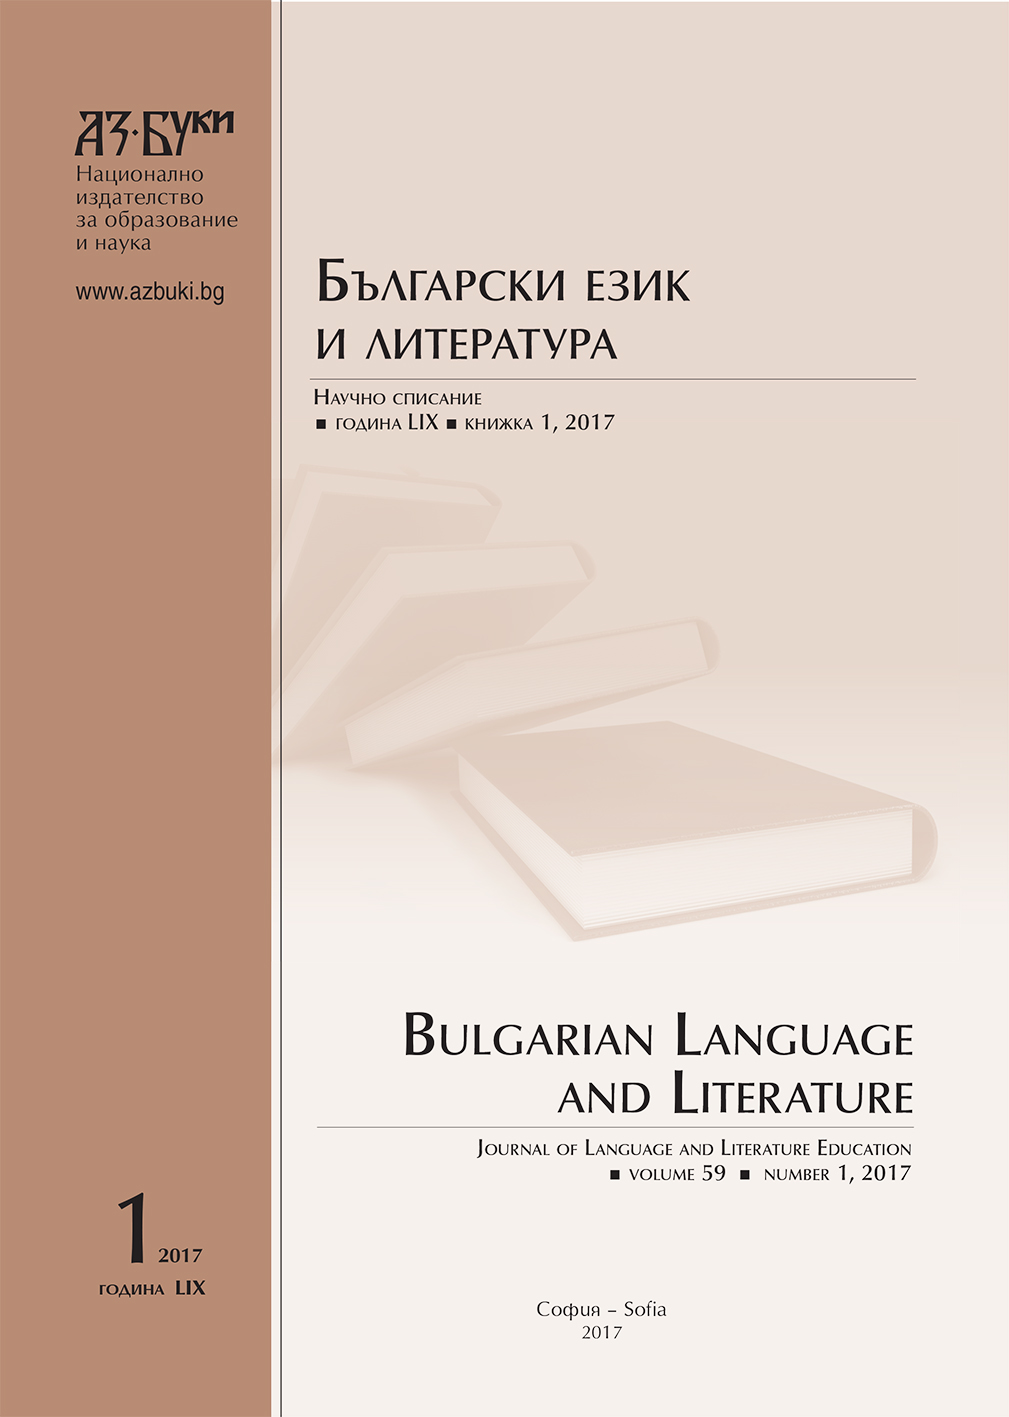 Съвременни лингвистични идеи, обогатяващи обучението по български език